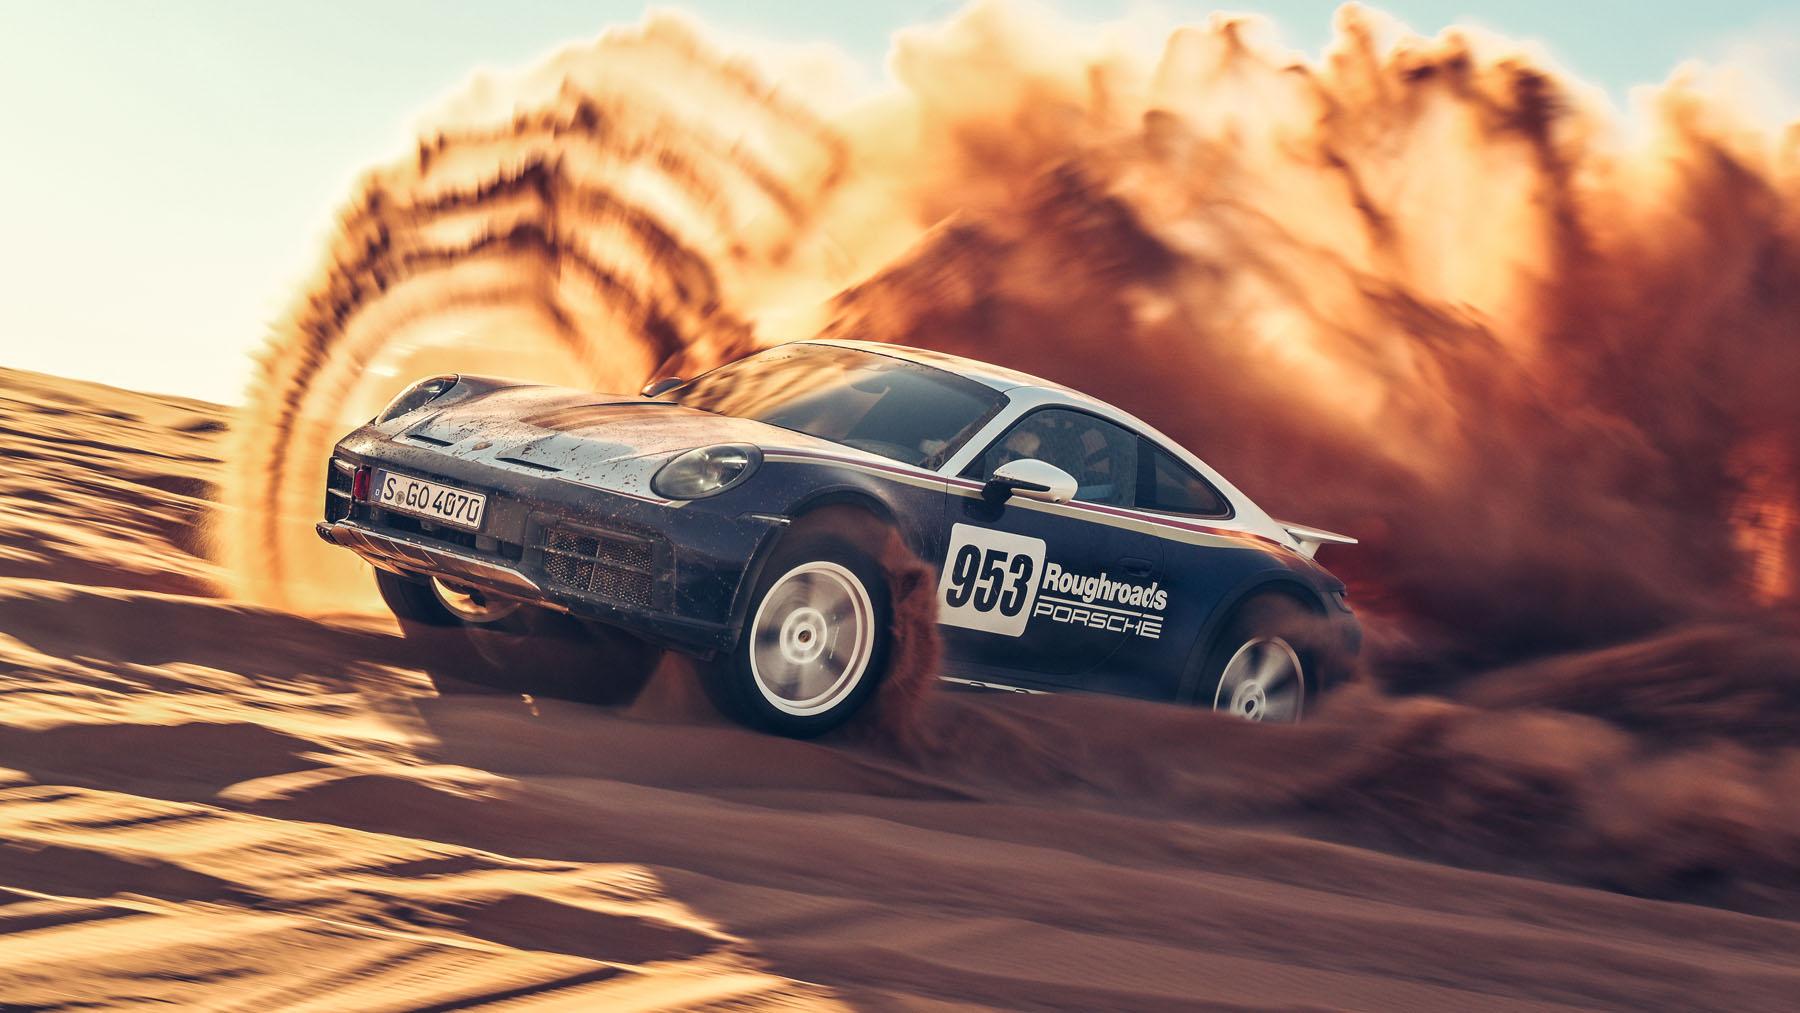 Porsche 911 Dakar review: utterly joyous and addictive to drive Reviews 2023